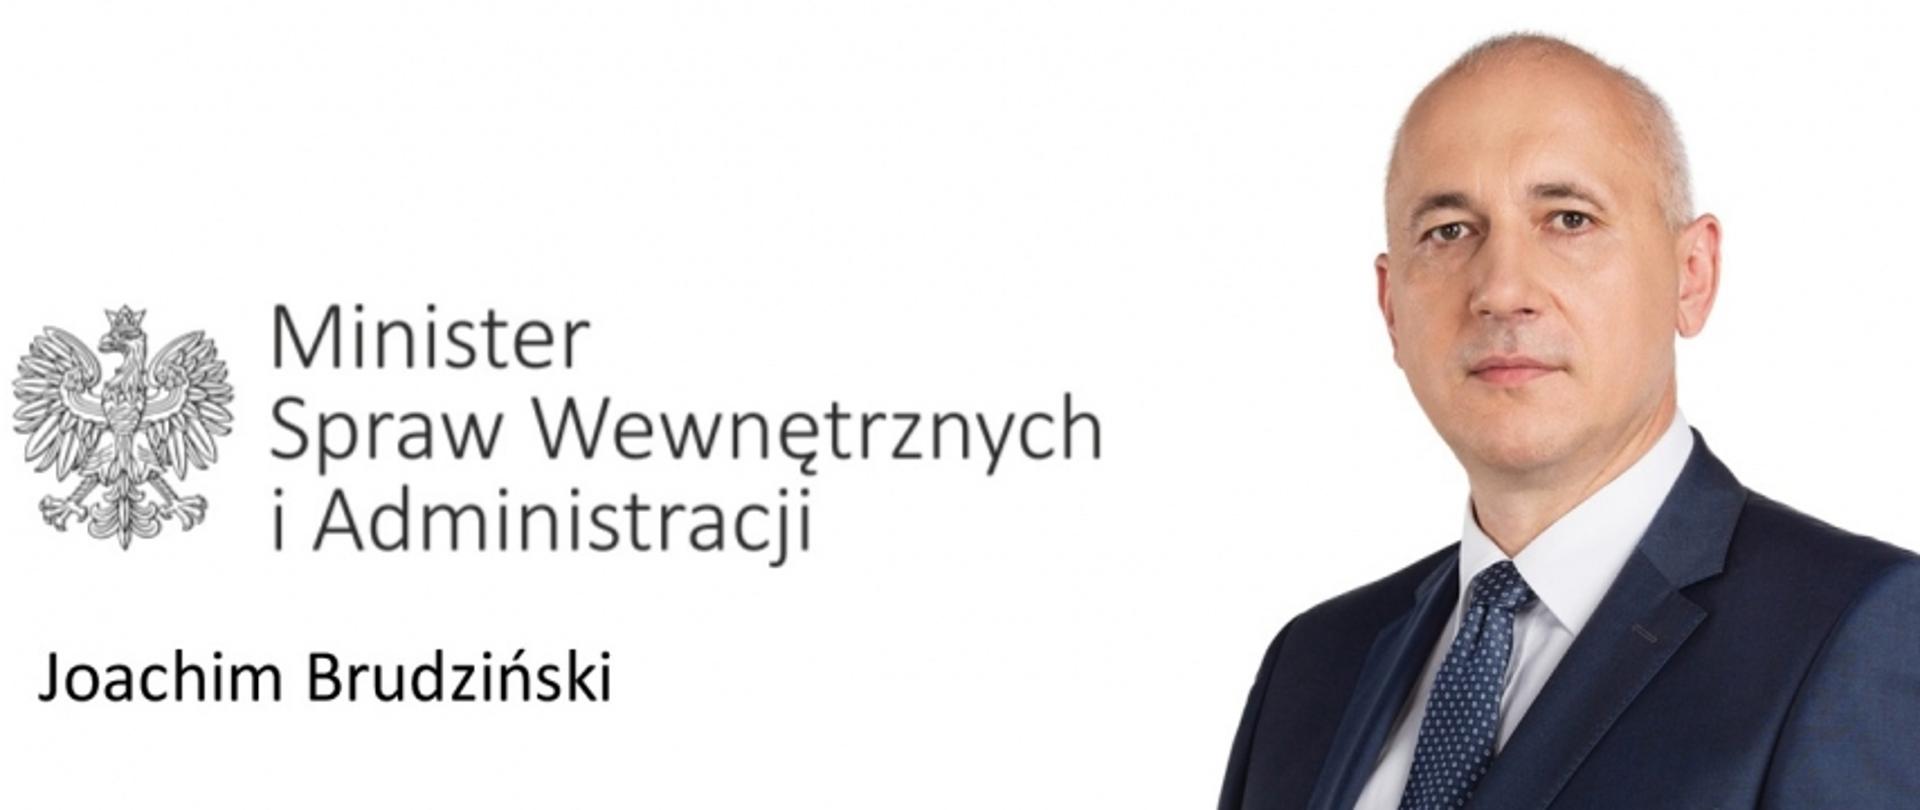 Minister Spraw Wewnętrznych i Administracji Joachim Brudziński